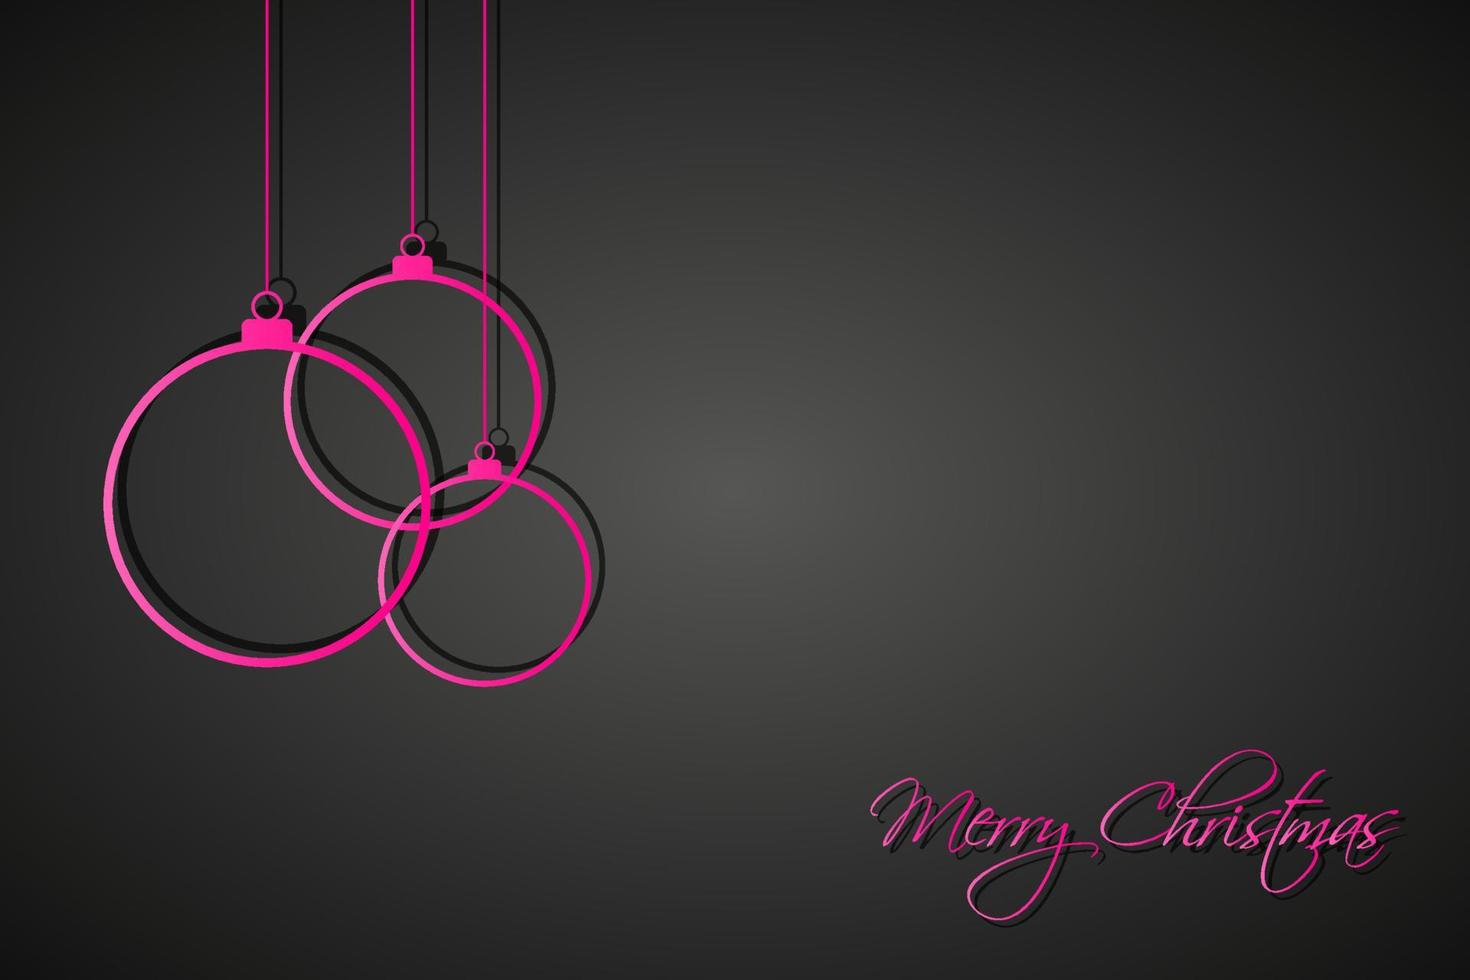 drie roze kerstballen op zwarte achtergrond. vakantie wenskaart met merry christmas teken. vector illustratie